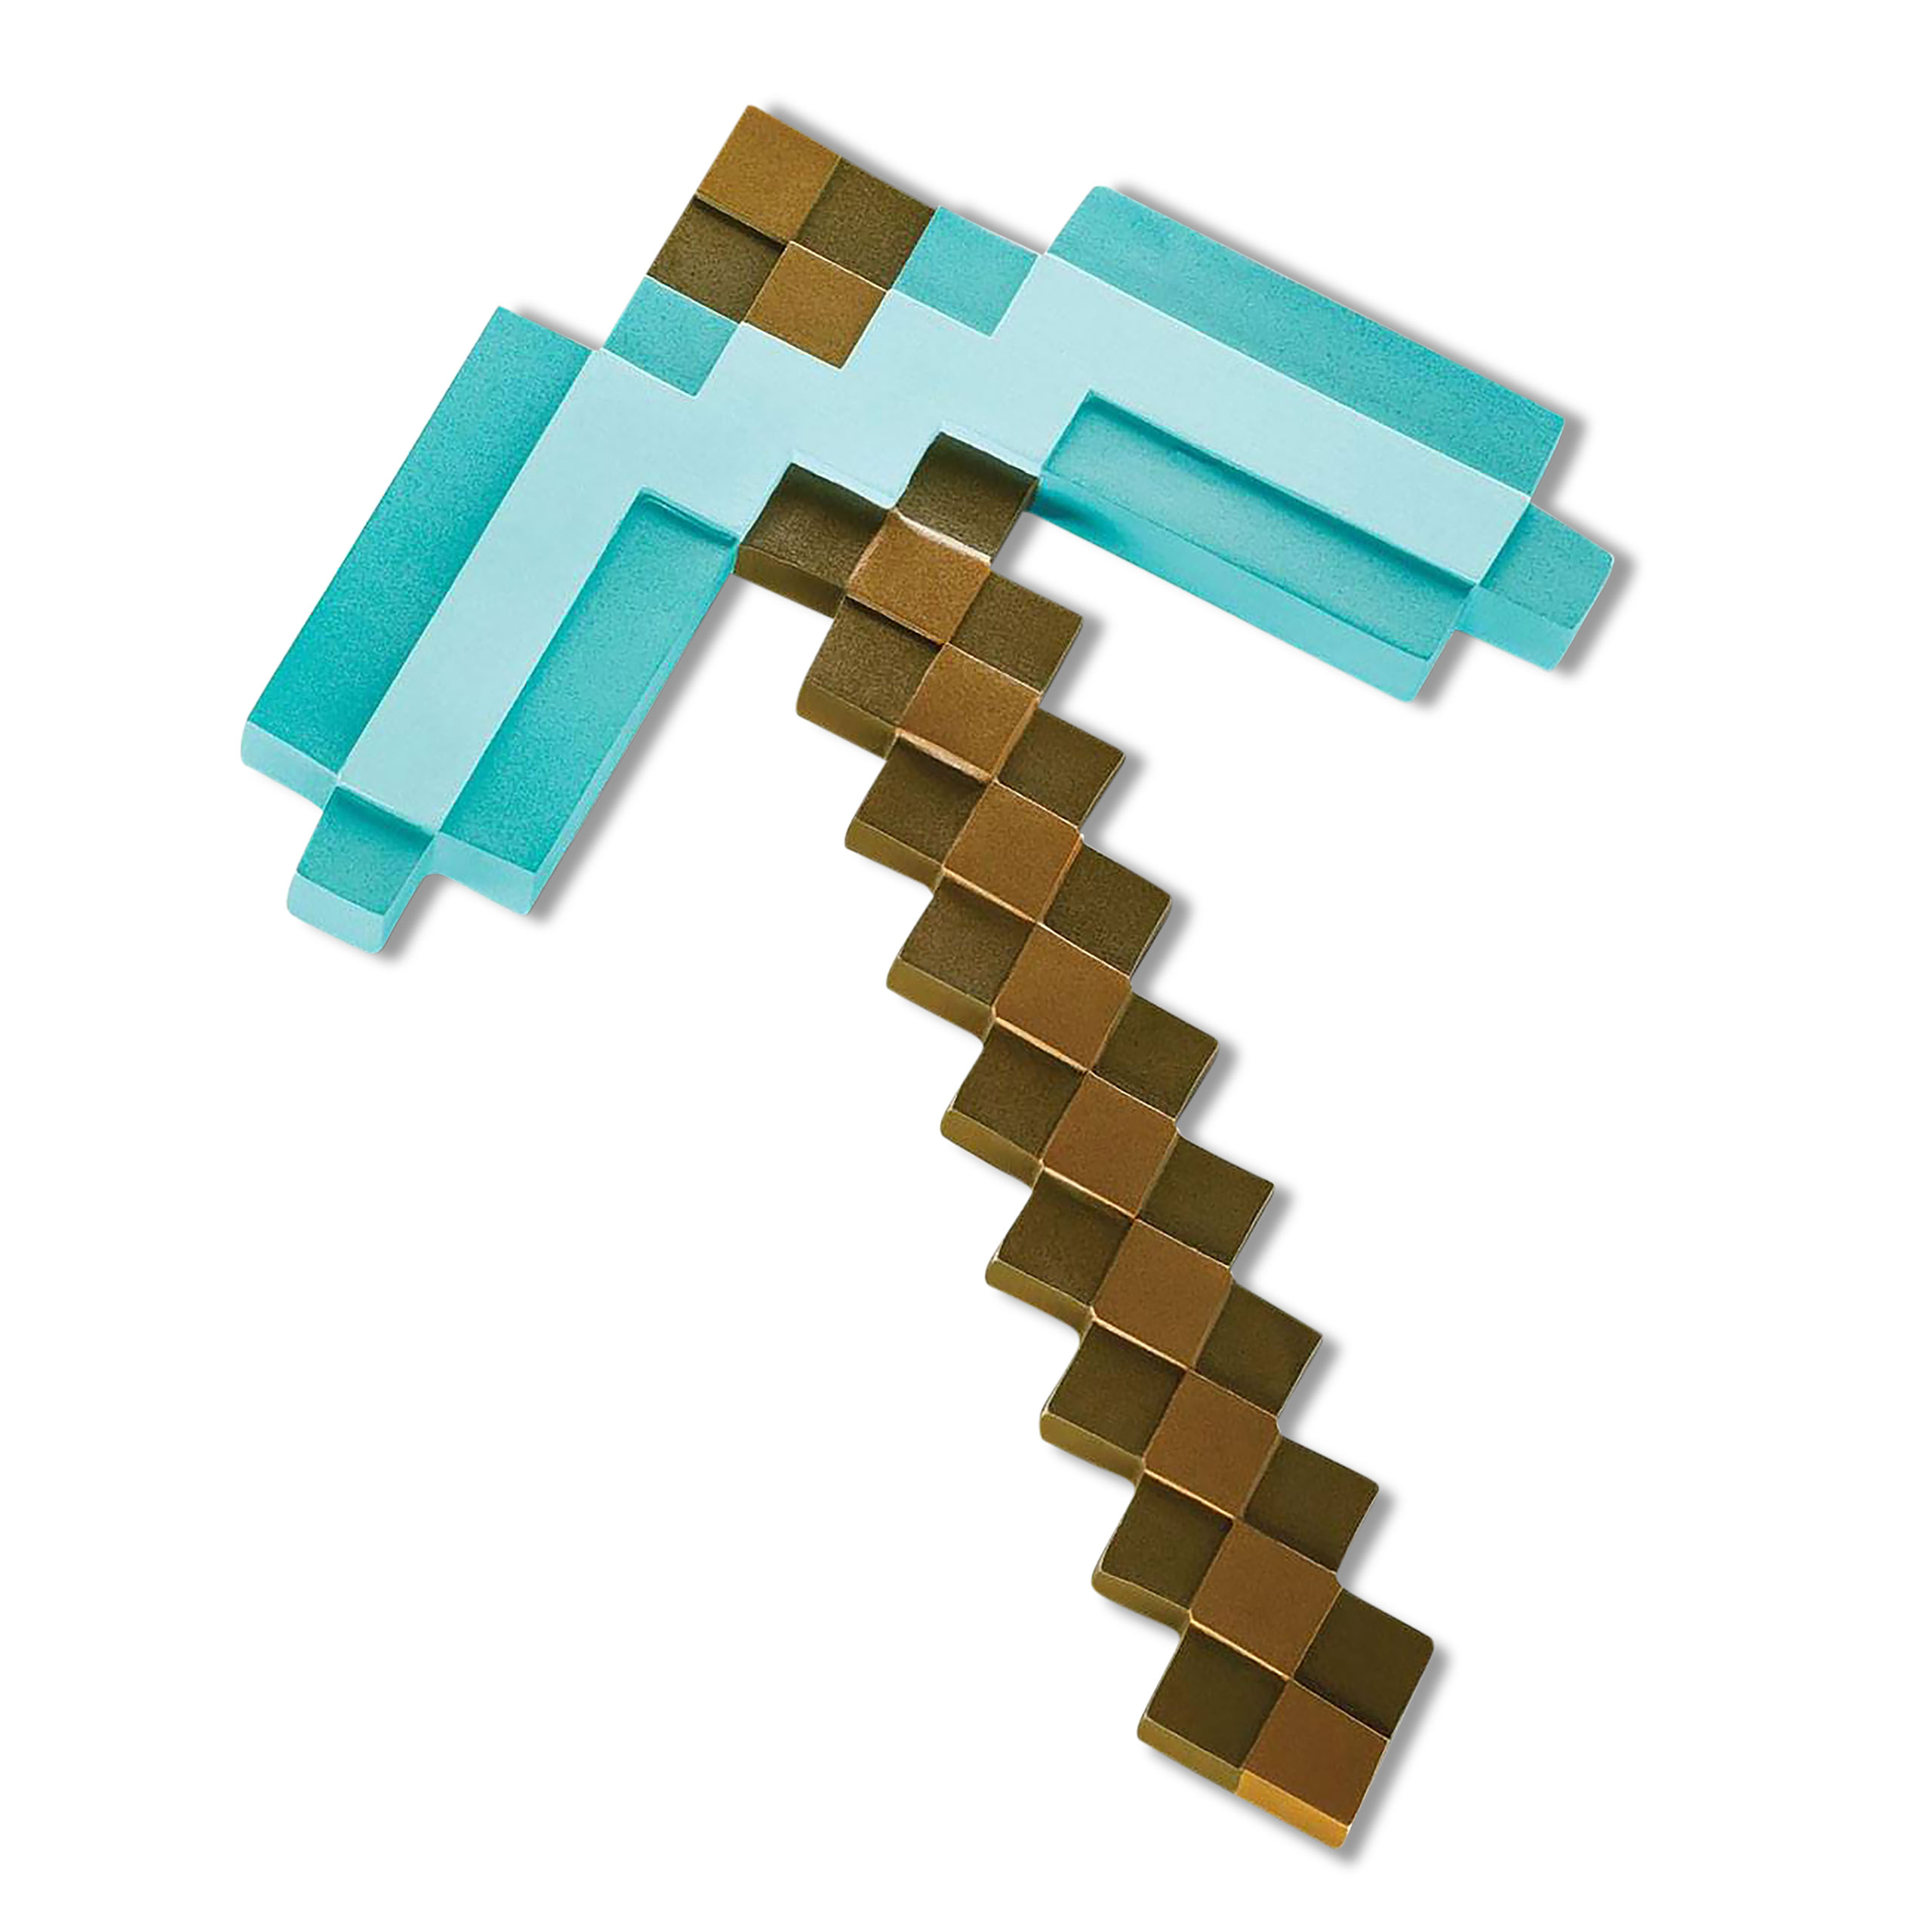 Minecraft - Diamond Pickaxe Foam Replica